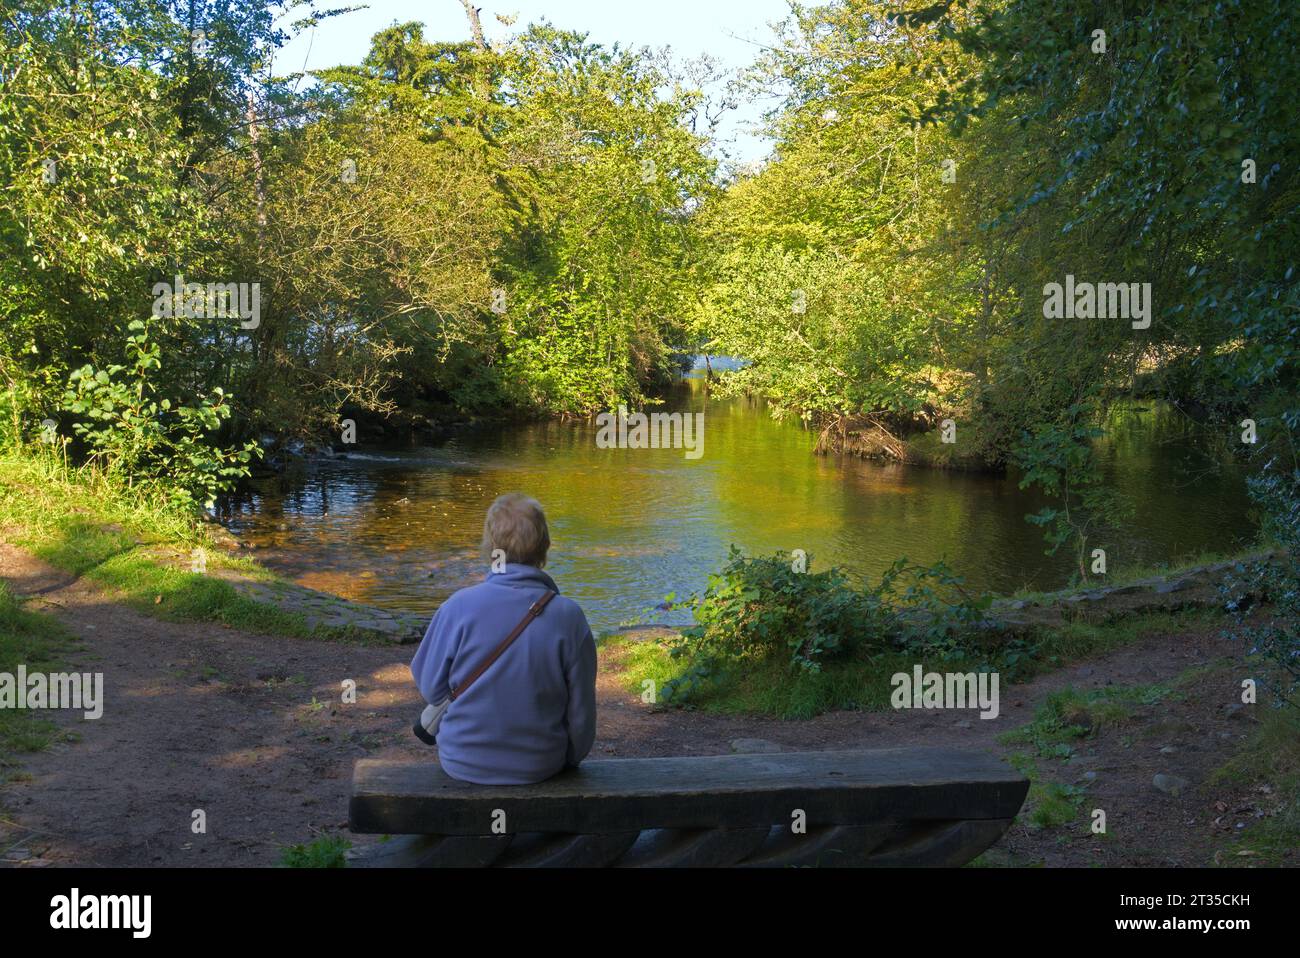 Femme assise seule sur un banc à côté de la rivière. Lumière du soir. Vue de l'autre côté de la rivière Ness près du centre d'Inverness. Inverness City, Highlands, Écosse, Royaume-Uni Banque D'Images